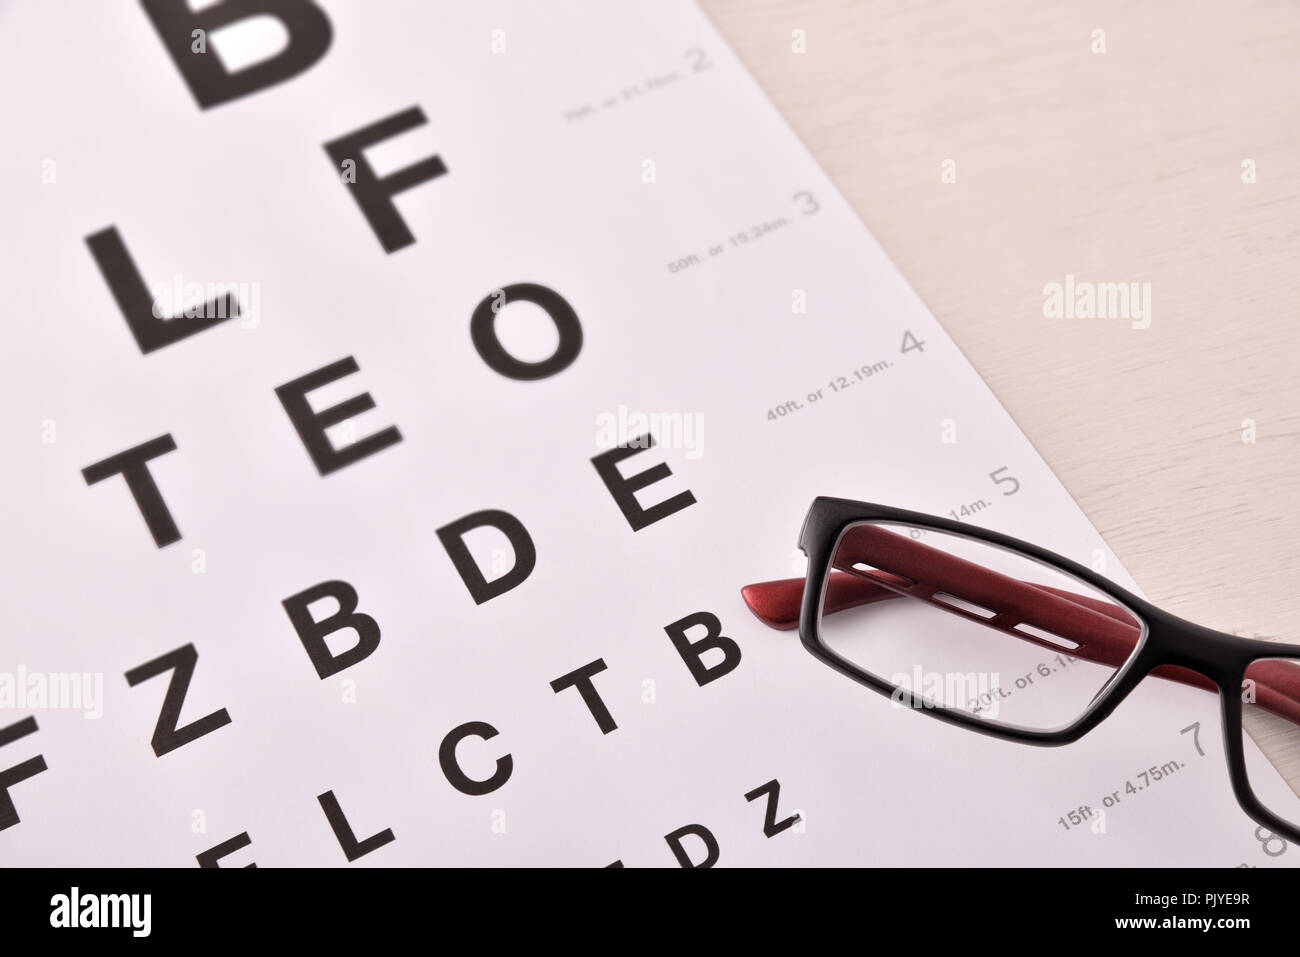 Concetto di revisione degli occhi con foglio con lettere e occhiali da vista. Vista dall'alto. Composizione orizzontale Foto Stock